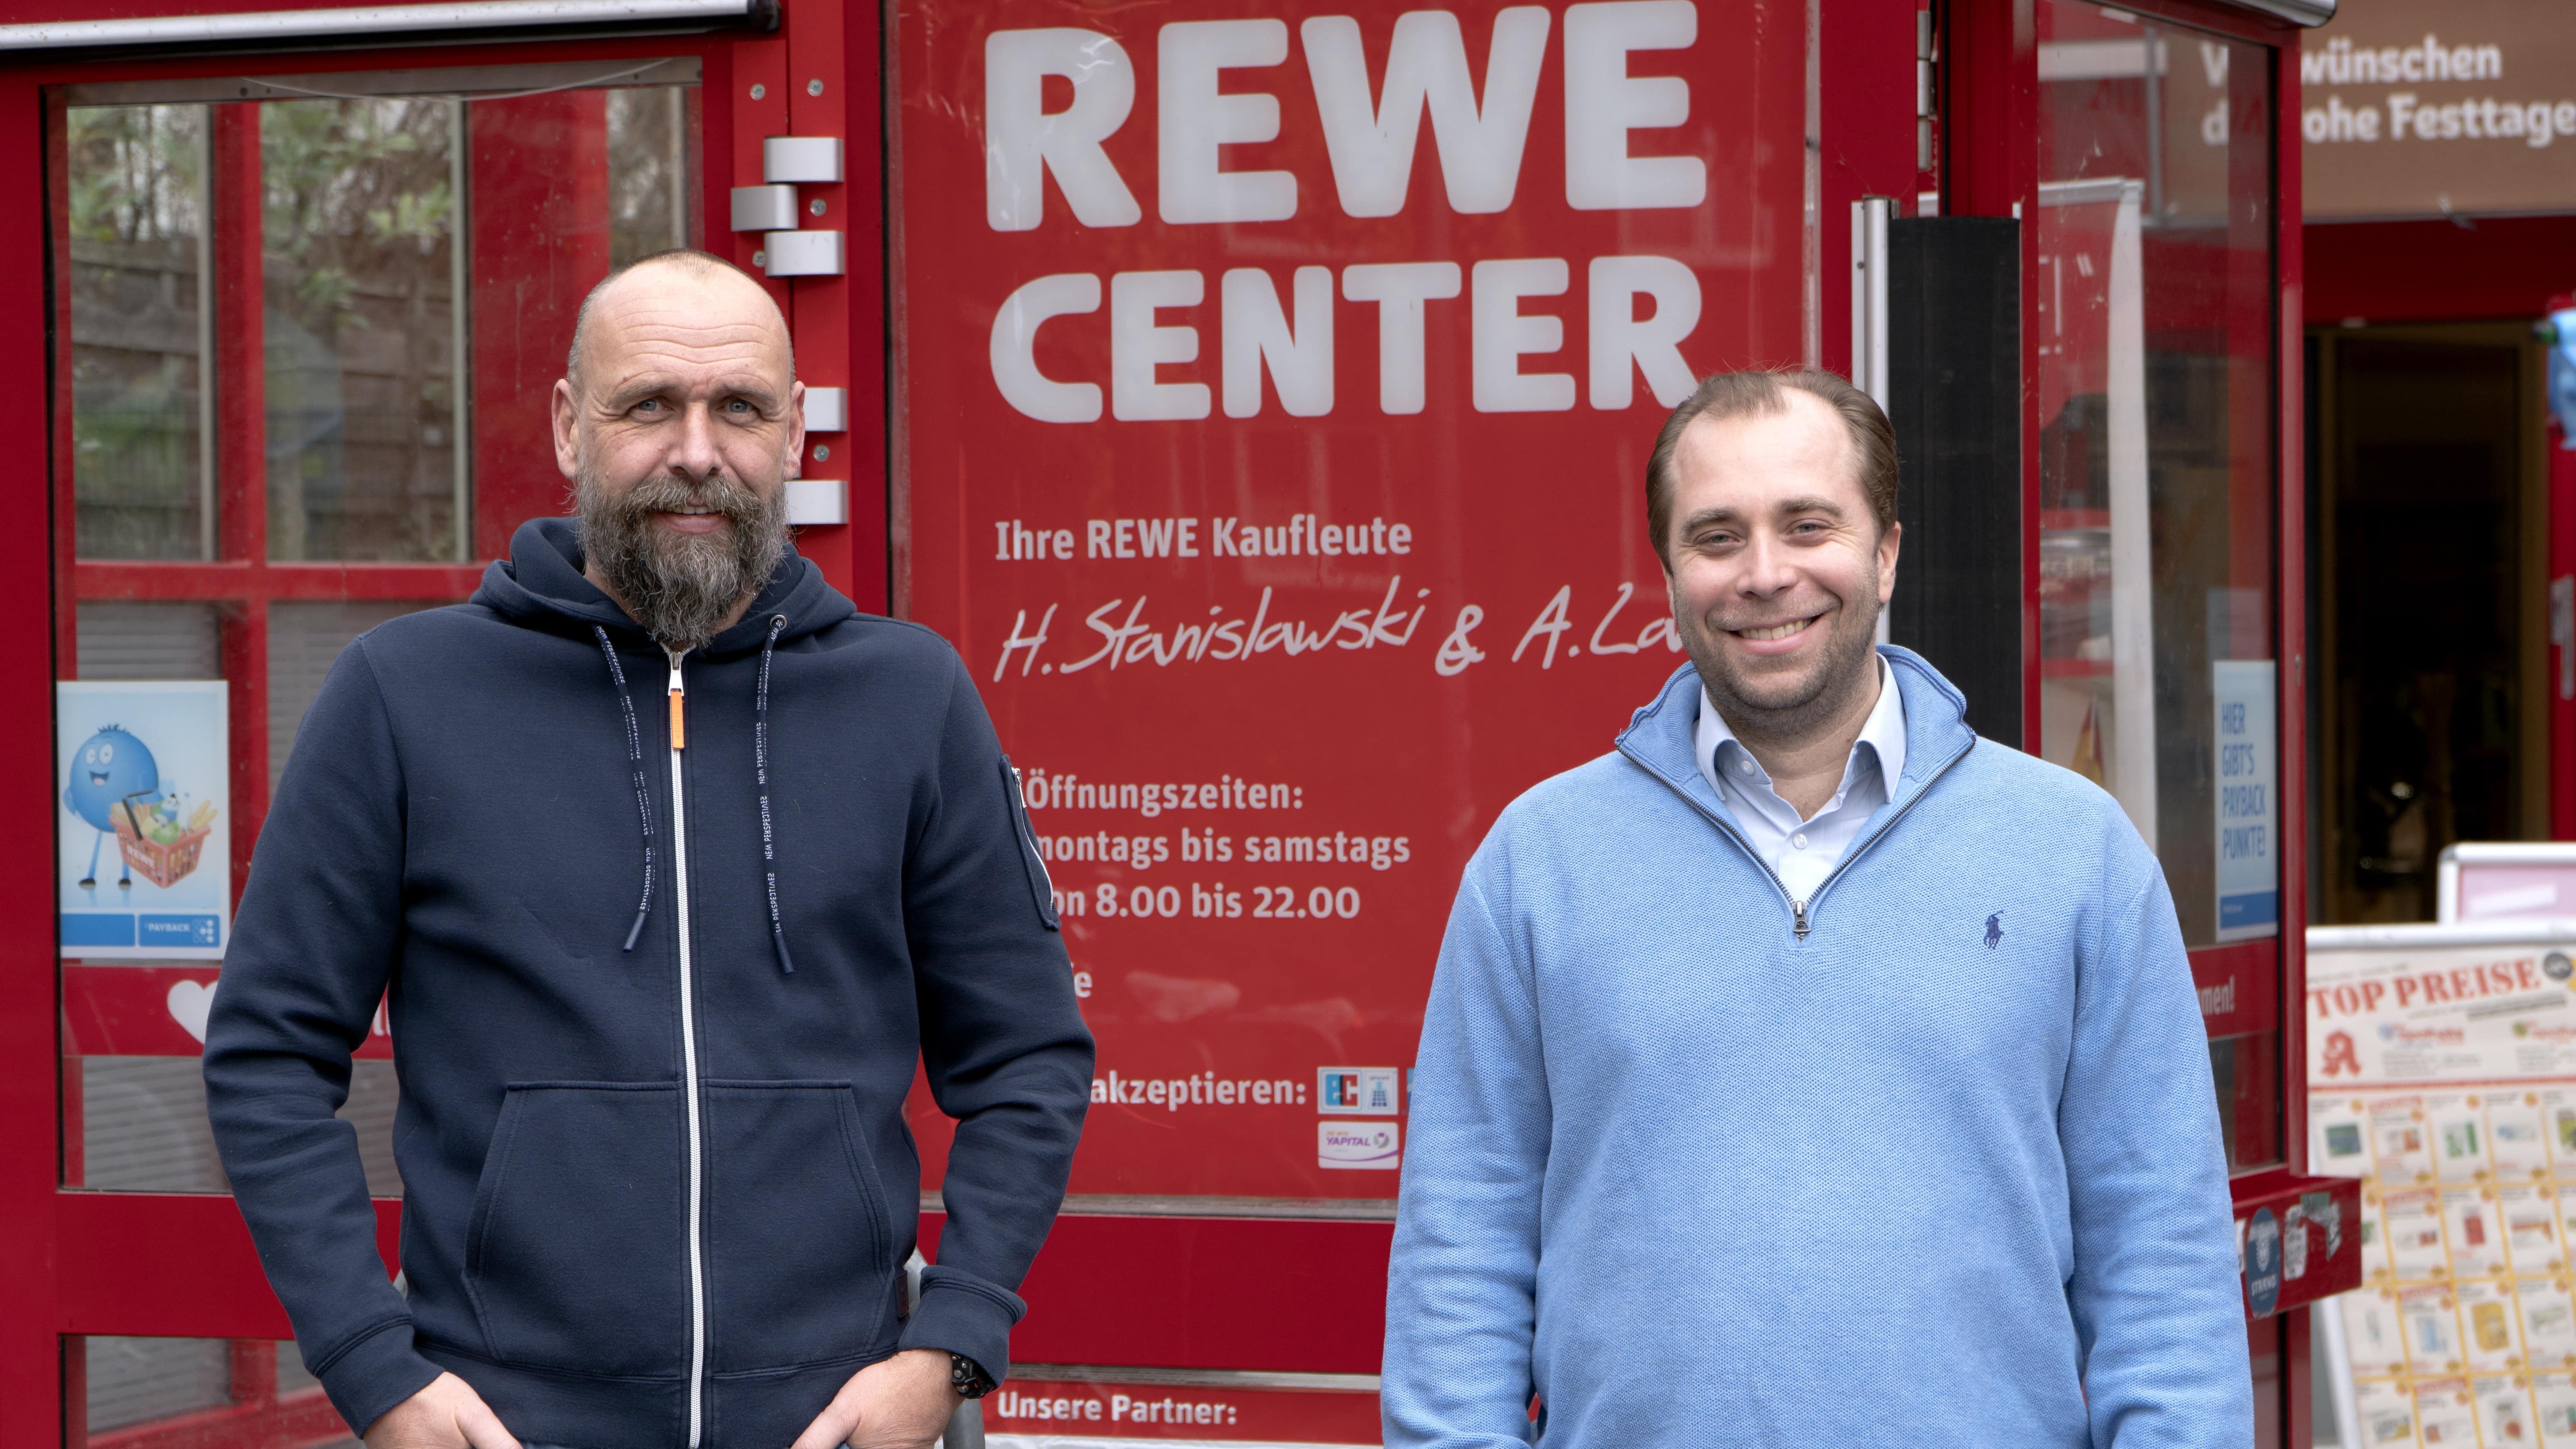 REWE Center, Dorotheenstraße 116 in Hamburg